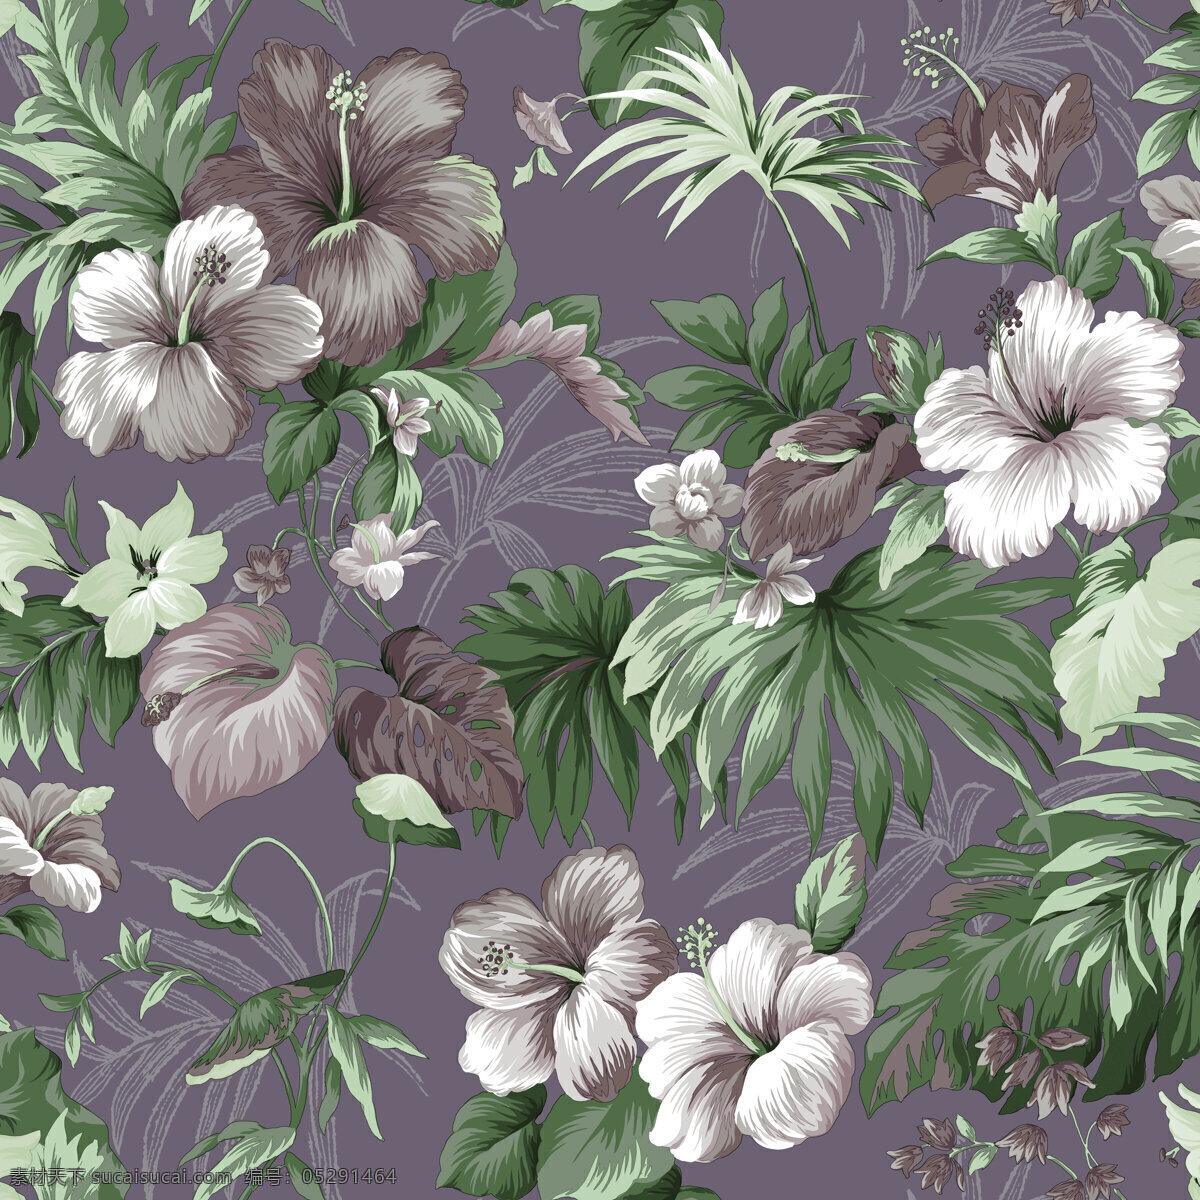 热带花卉图案 布料 底纹 印花 服装设计 四方连续图案 图案共享 底纹边框 背景底纹